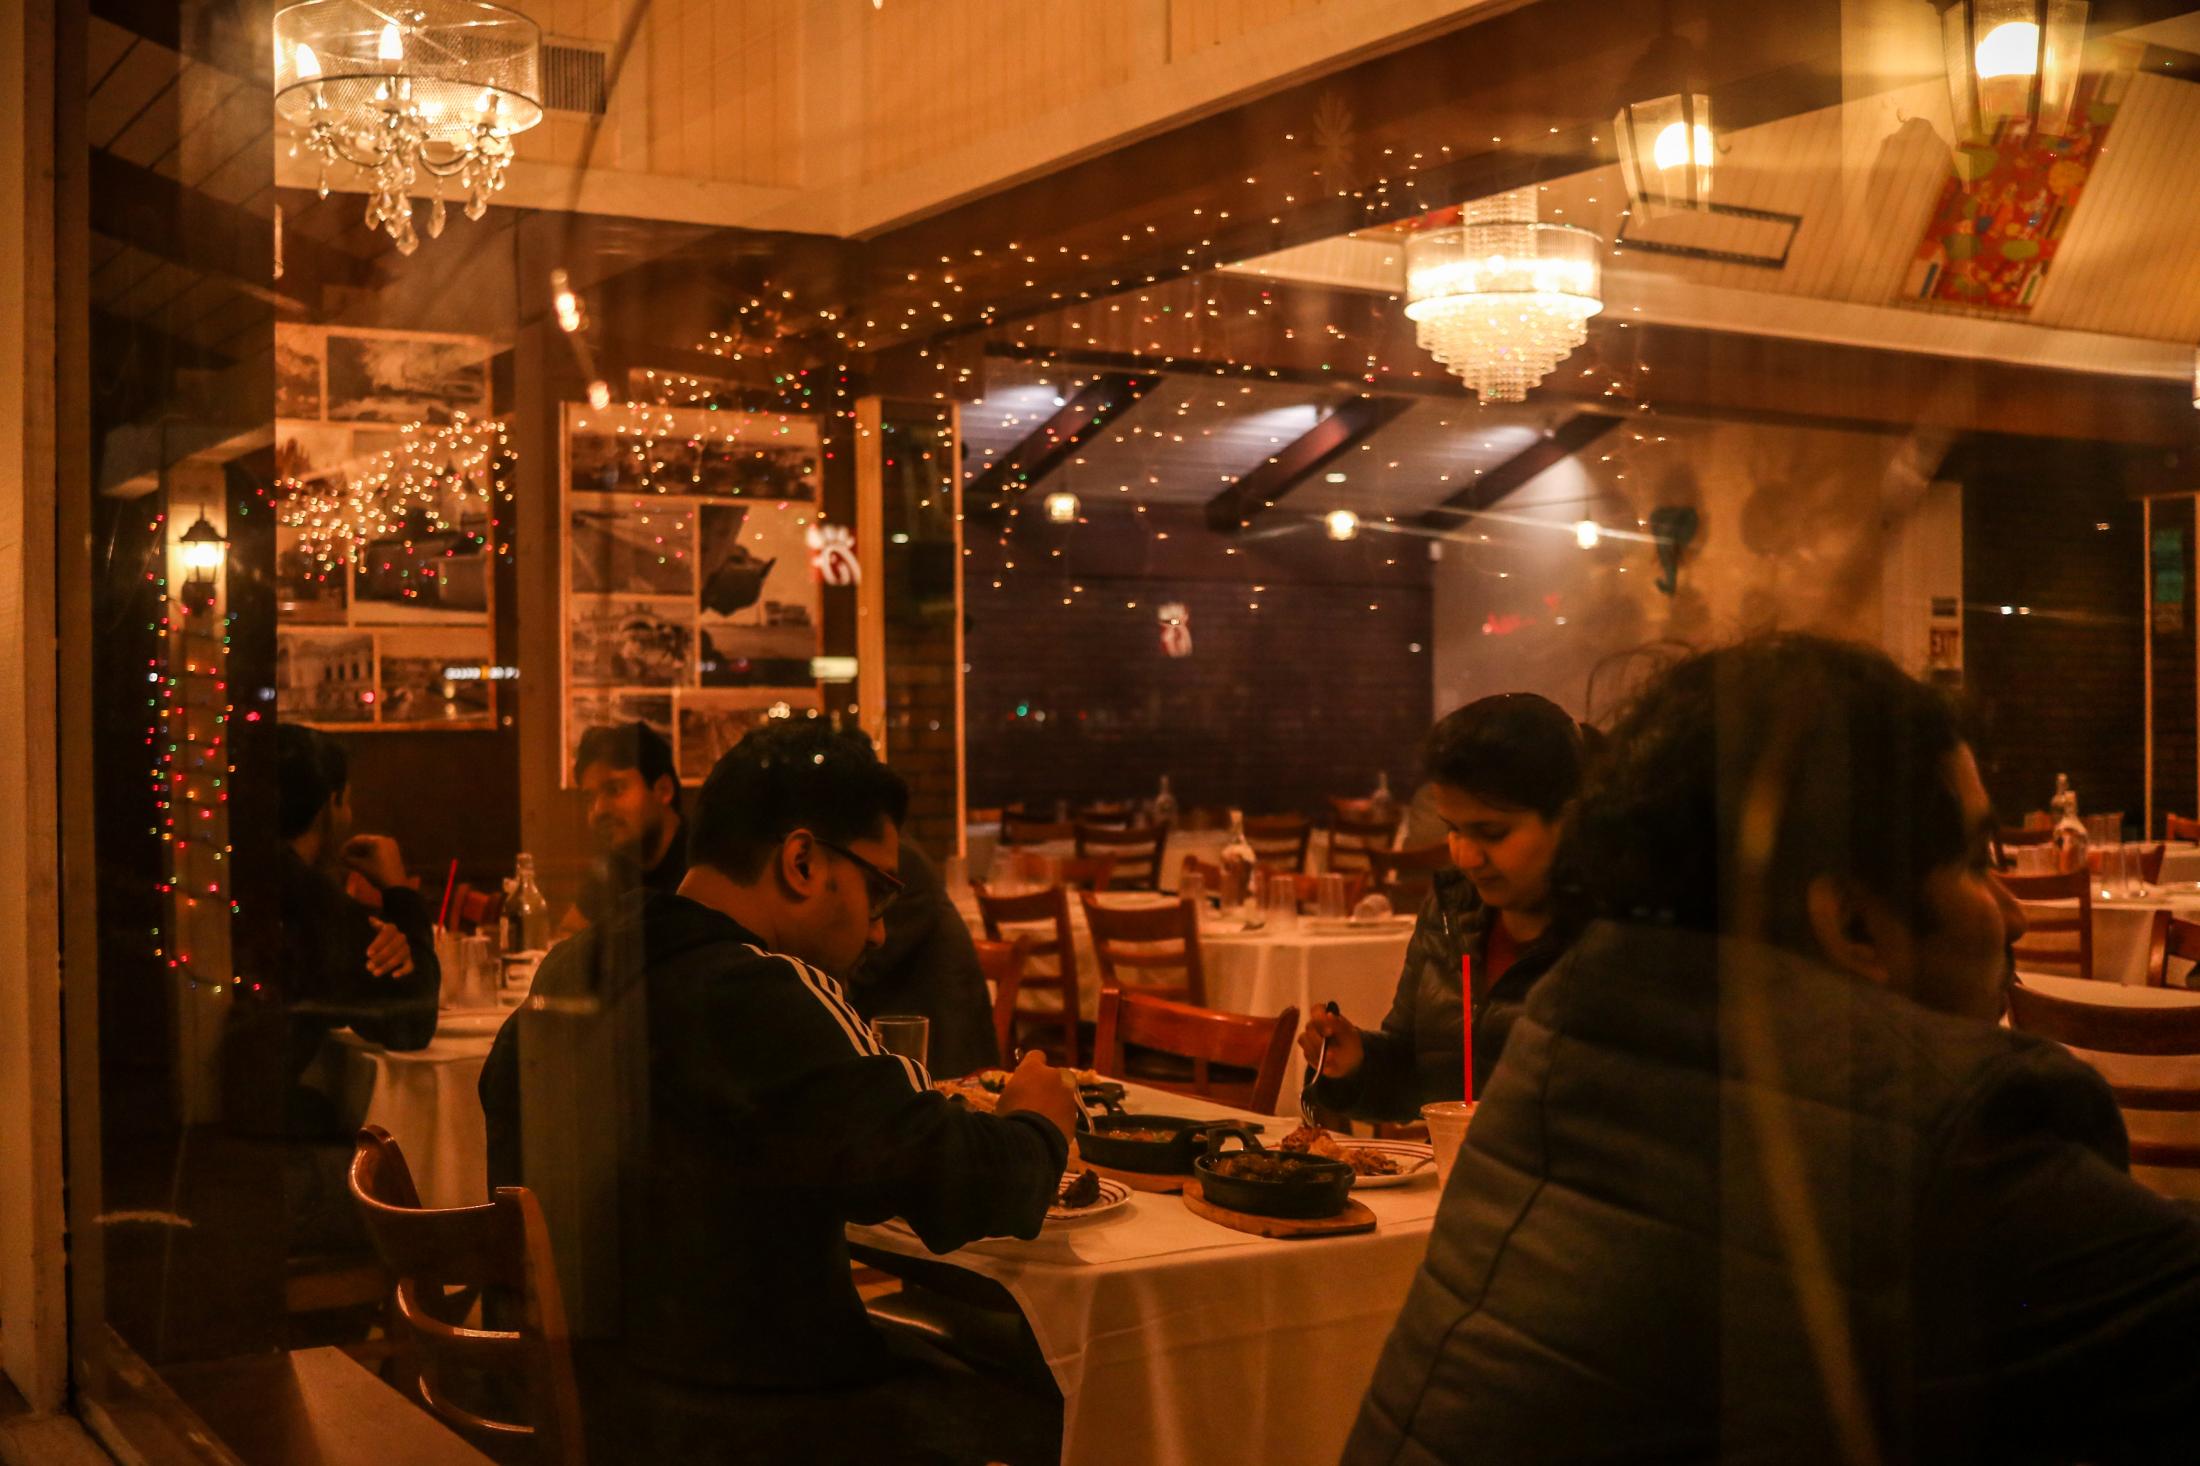 Indian Food - Customers dine at Palamuru Grill in Santa Clara, Calif.,...